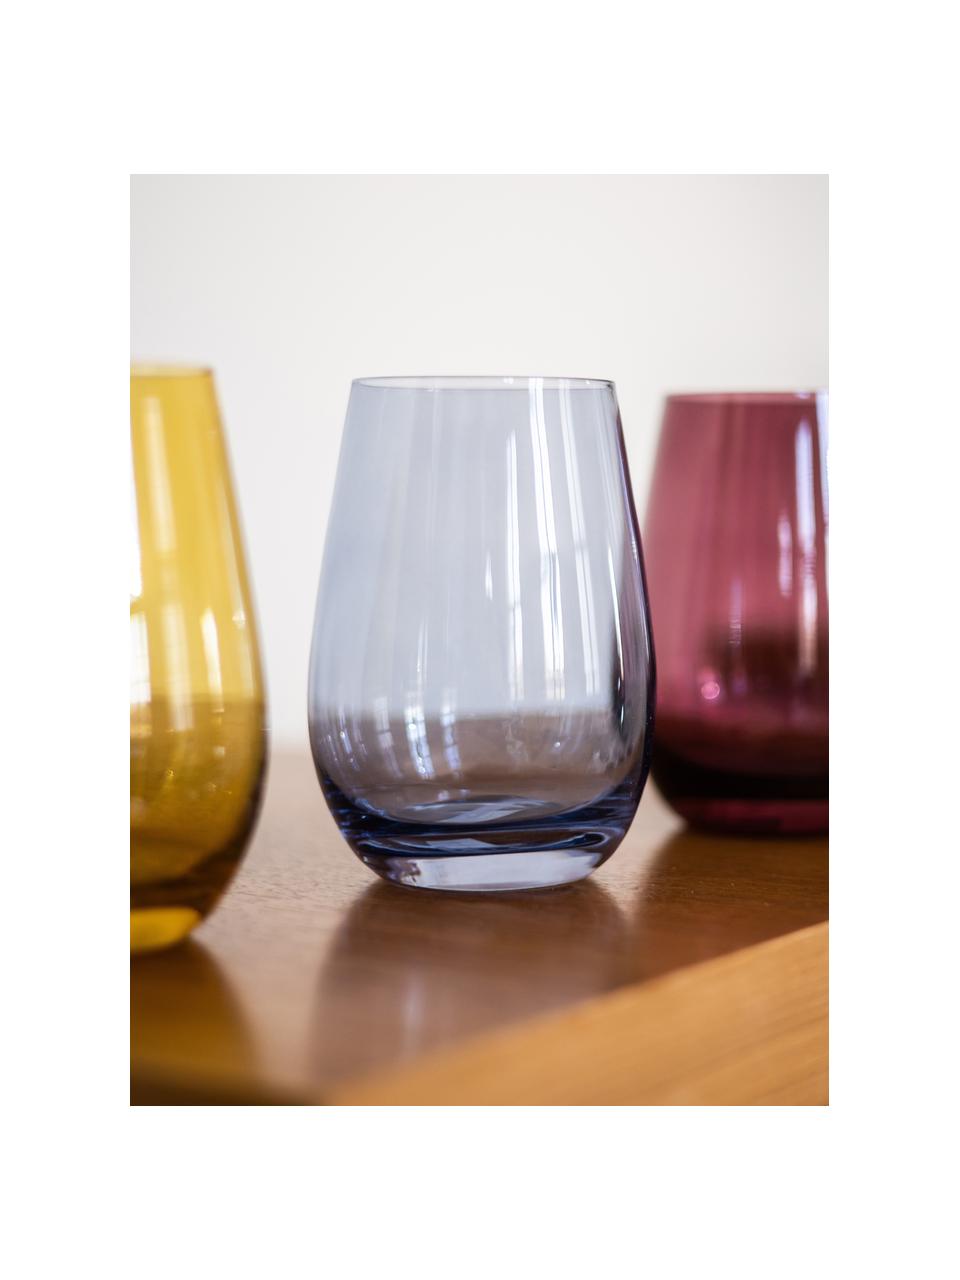 Vasos de colores Elements, 6 uds., Vidrio, Azul claro, Ø 9 x Al 12 cm, 465 ml